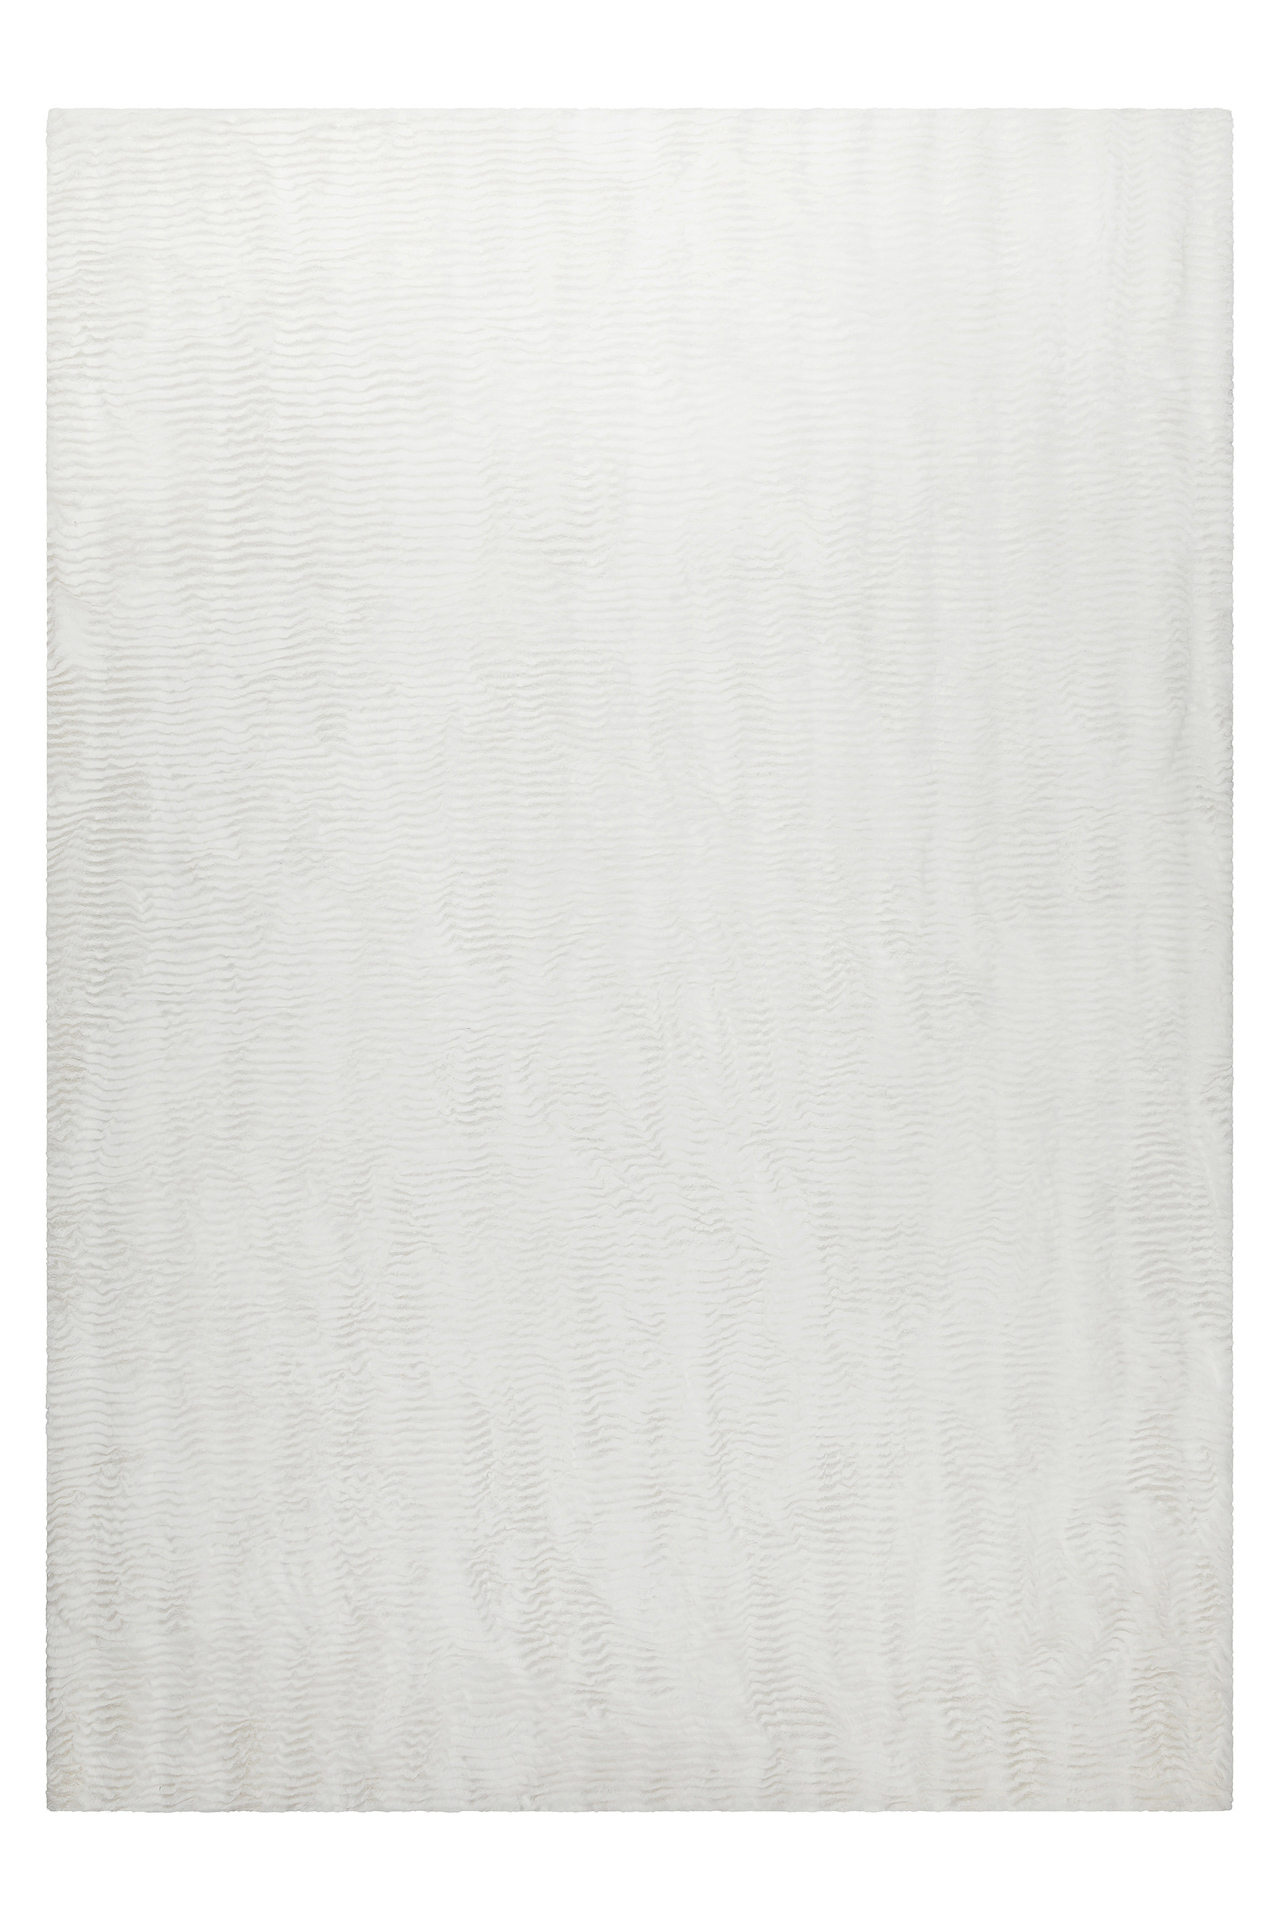 Esprit Teppich Weiß und sehr flauschig Hochflor » Alice Beach « - Ansicht 1